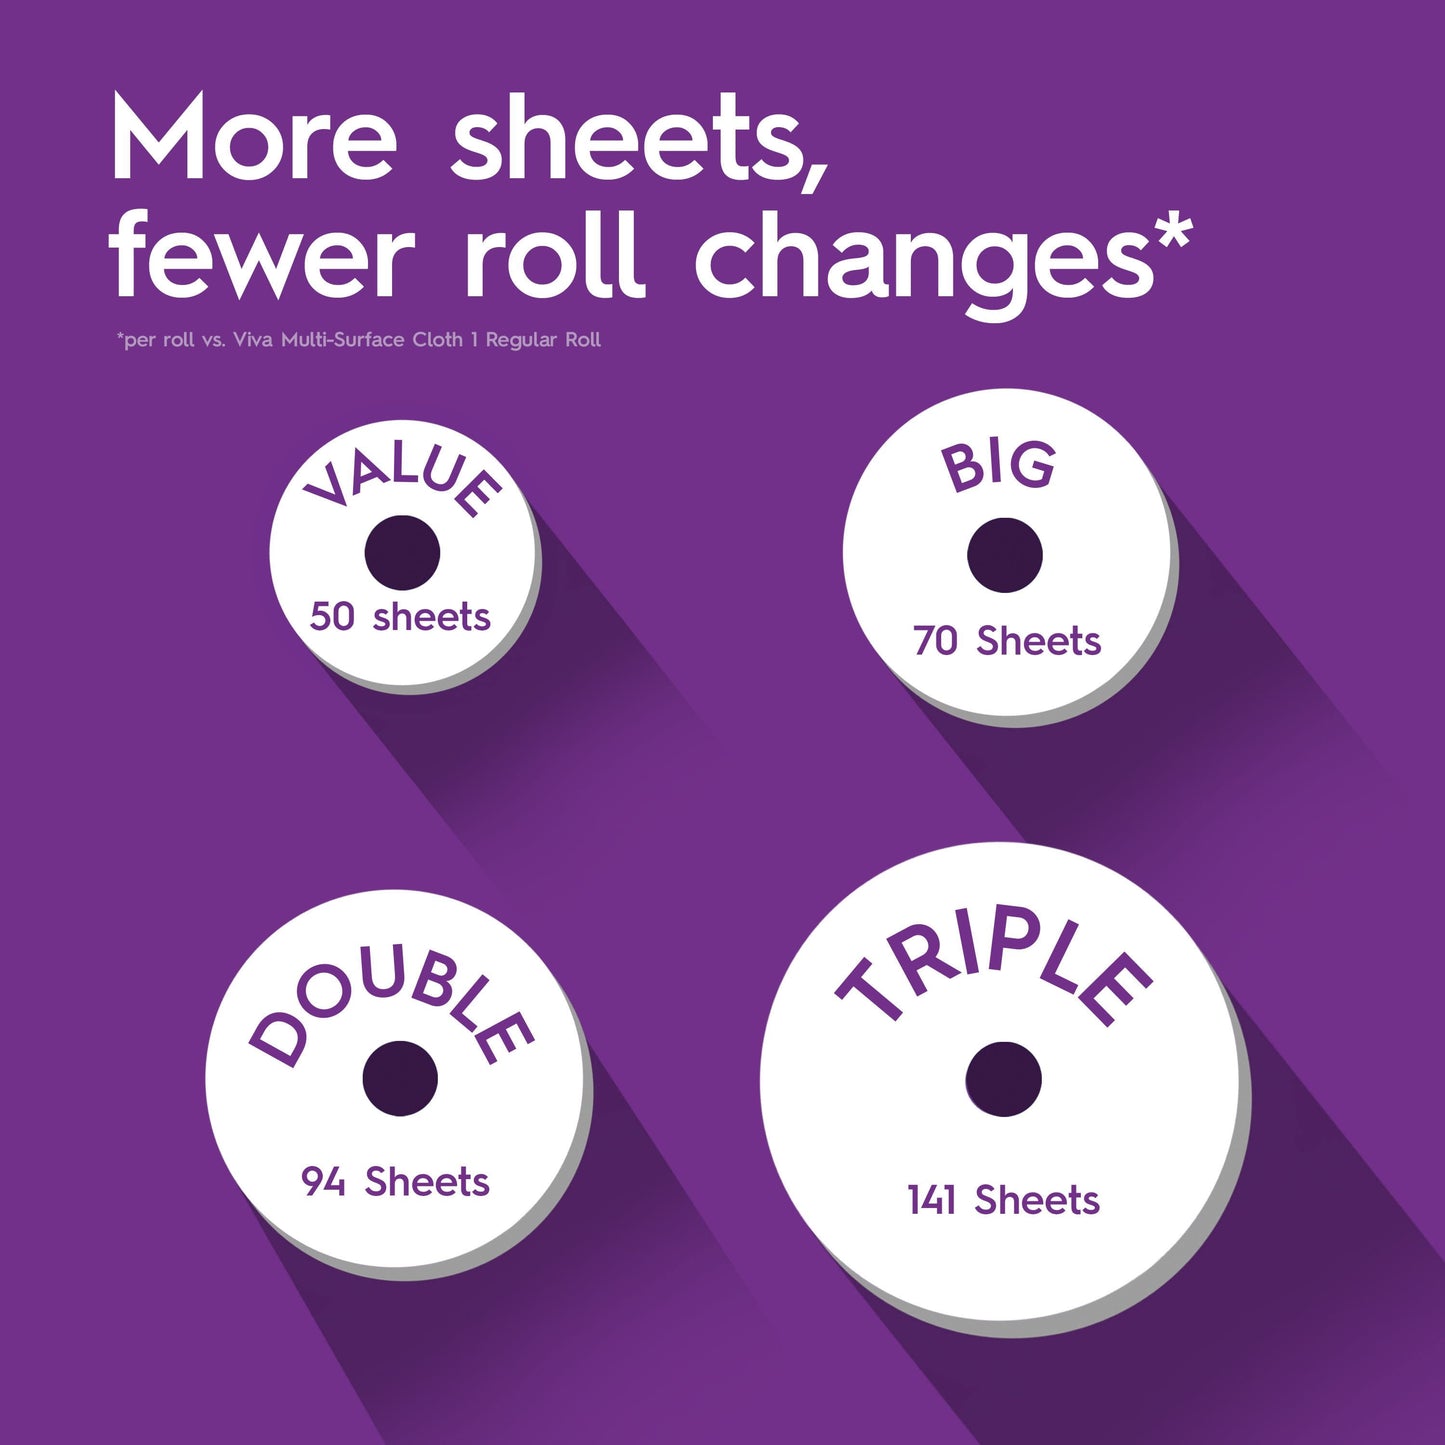 Viva Signature Cloth Paper Towels, 2 Triple Rolls, 141 Sheets Per Roll (282 Sheets Total)